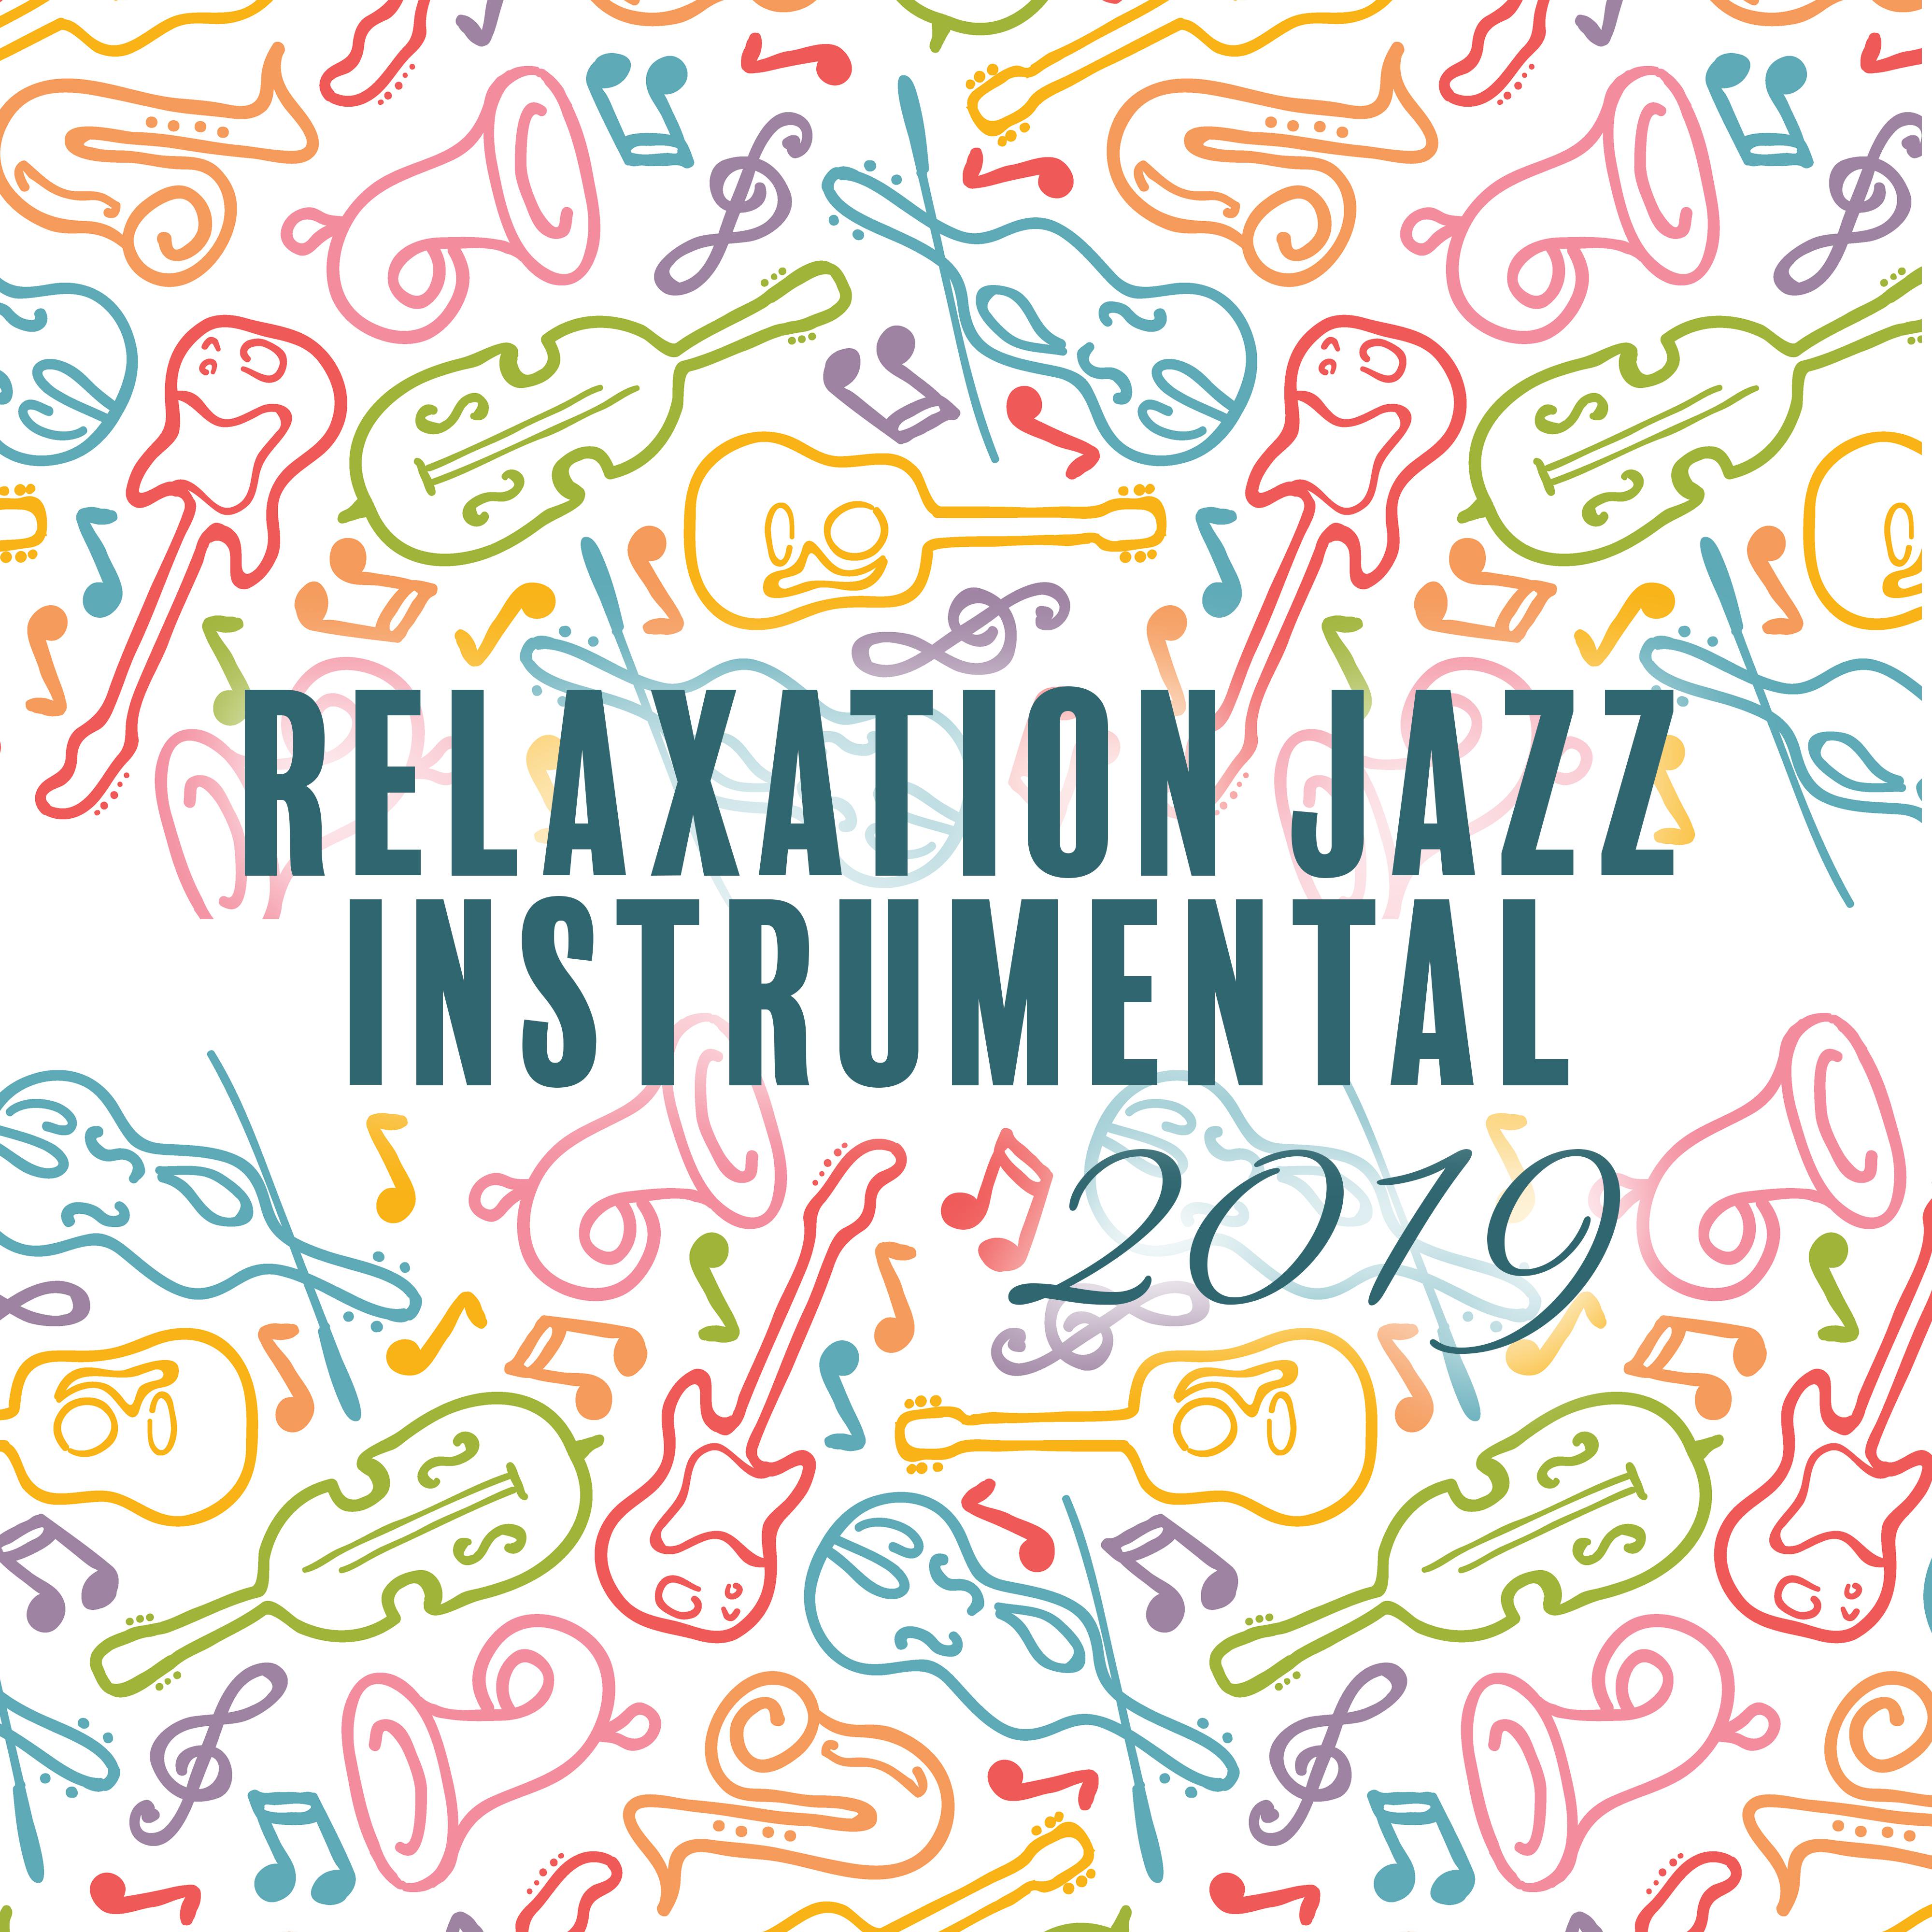 Relaxation Jazz Instrumental 2019 – Ambiance Jazz Parfait pour Danser, Vibrations de Saxophone